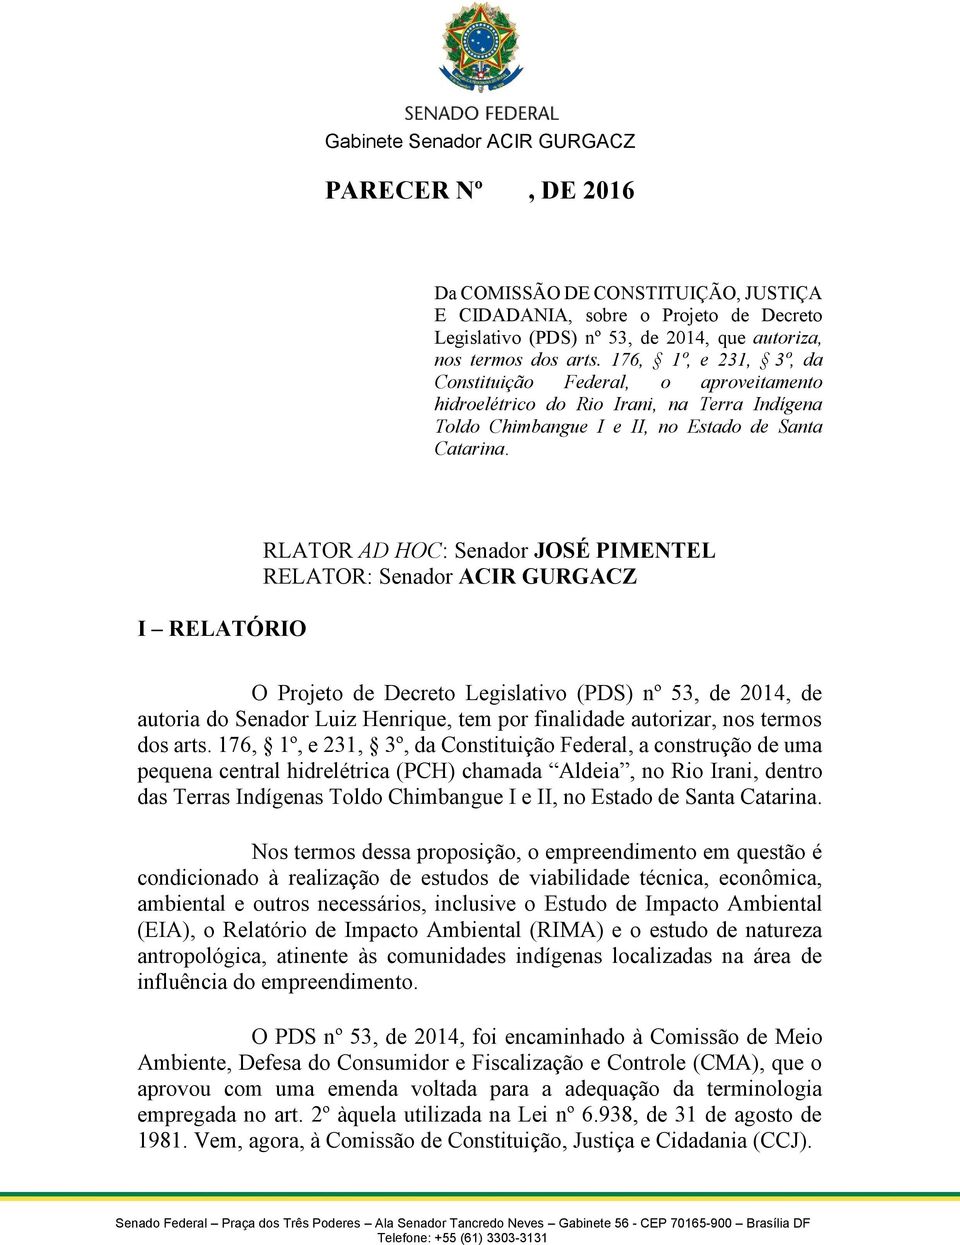 I RELATÓRIO RLATOR AD HOC: Senador JOSÉ PIMENTEL RELATOR: Senador ACIR GURGACZ O Projeto de Decreto Legislativo (PDS) nº 53, de 2014, de autoria do Senador Luiz Henrique, tem por finalidade